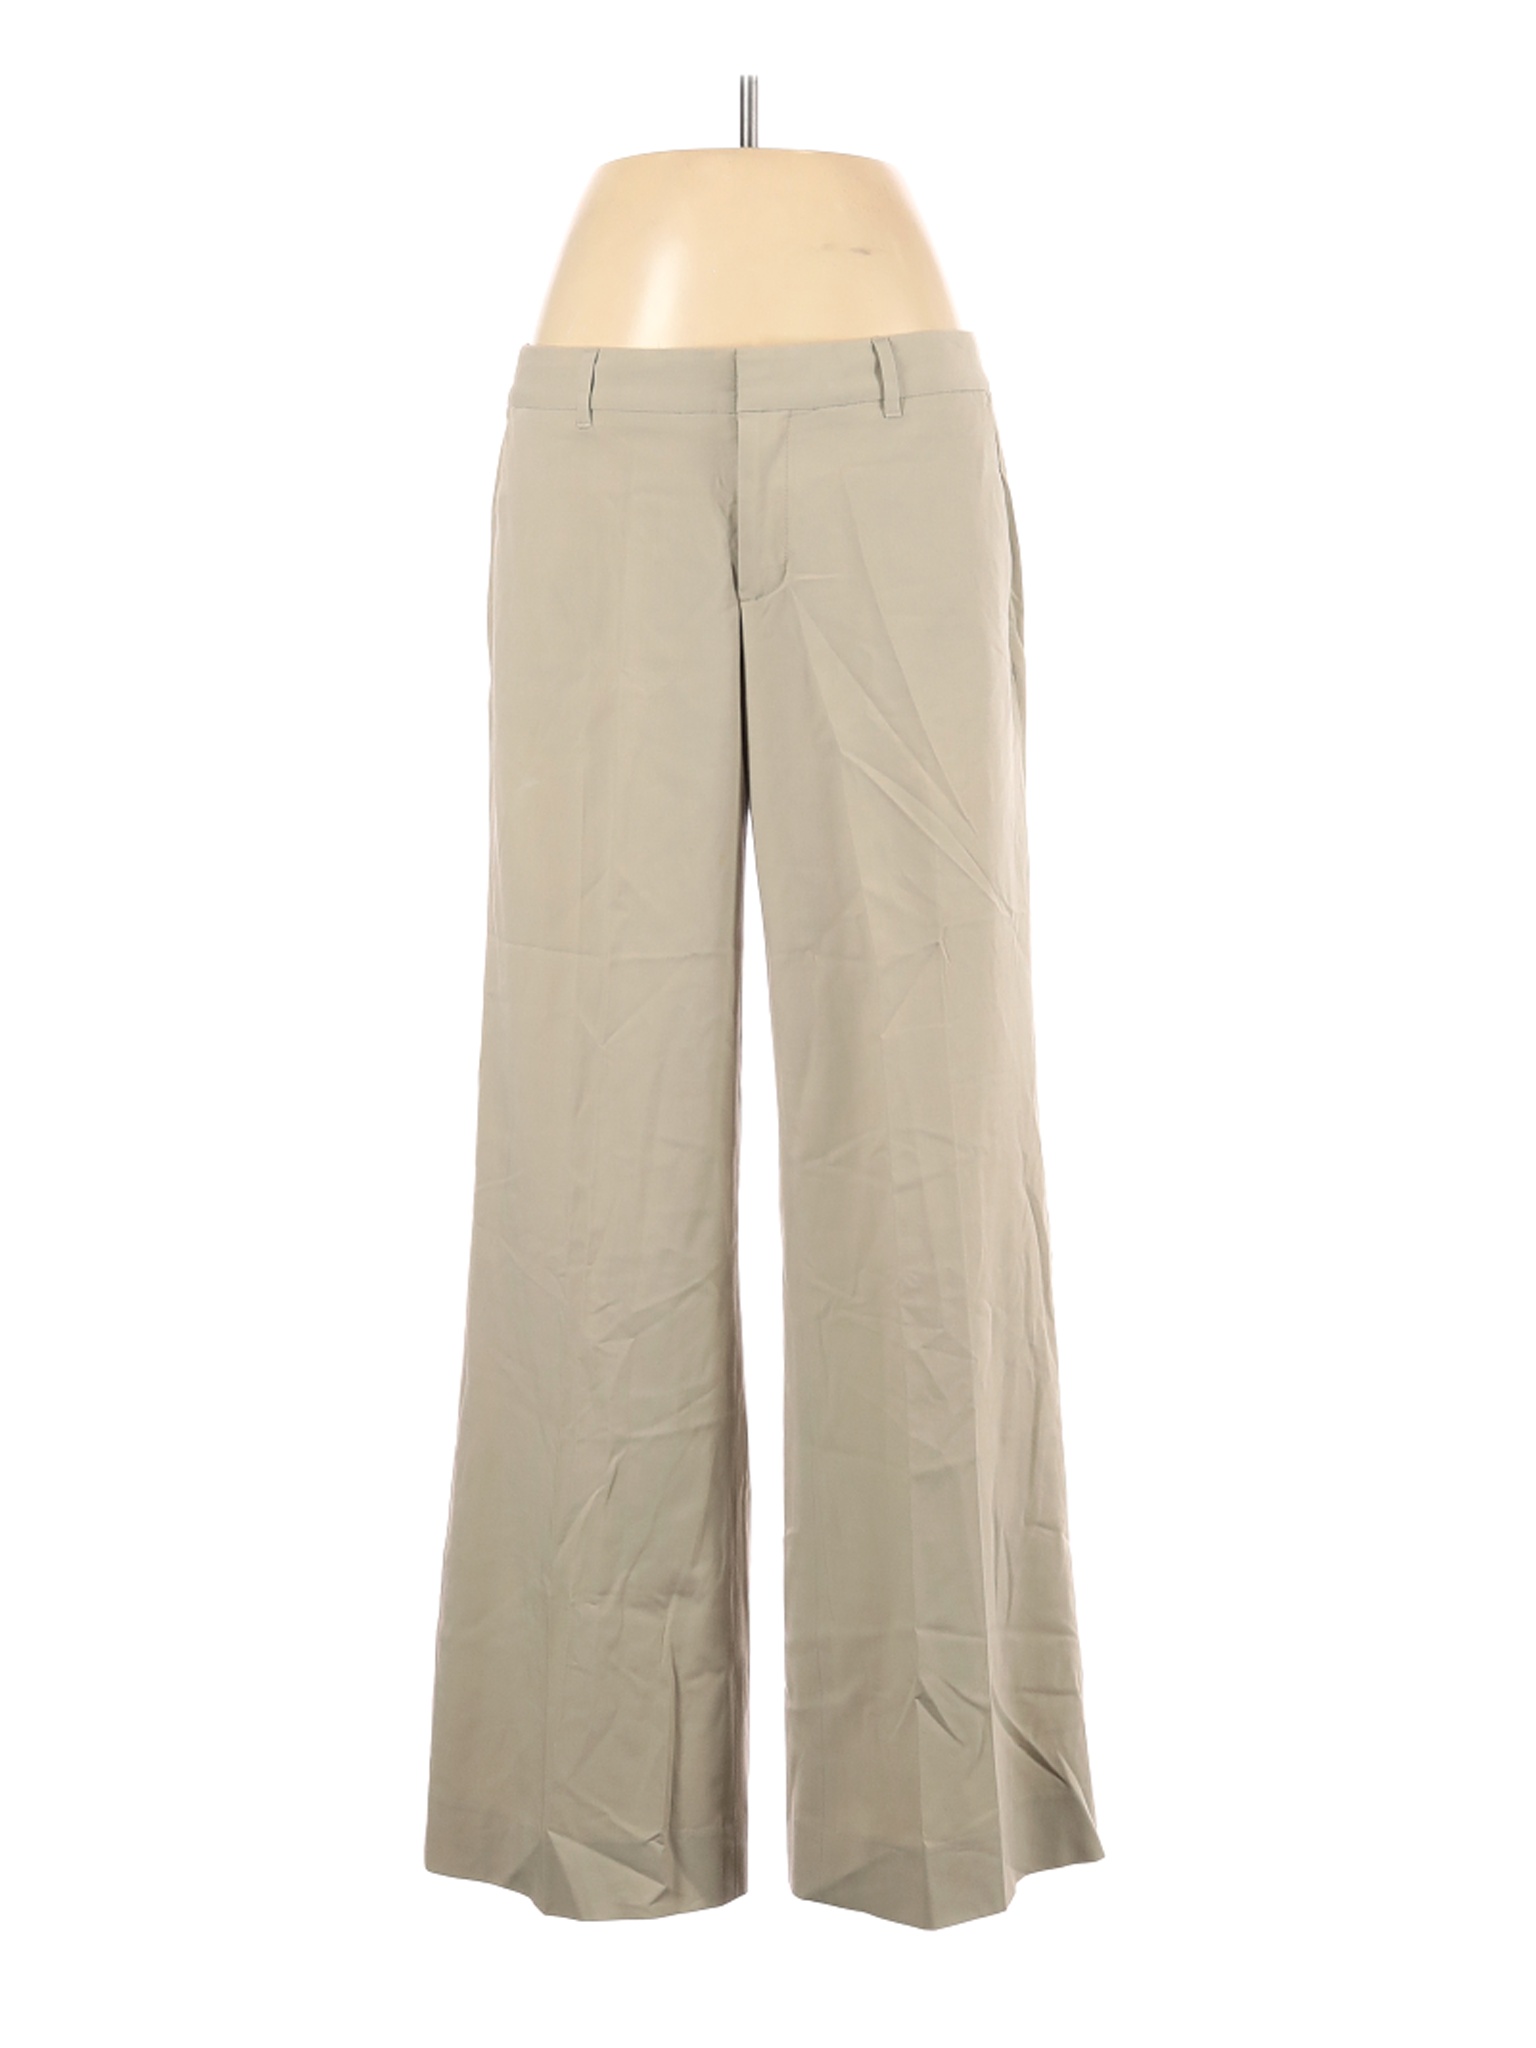 Gap Women Brown Casual Pants 6 | eBay